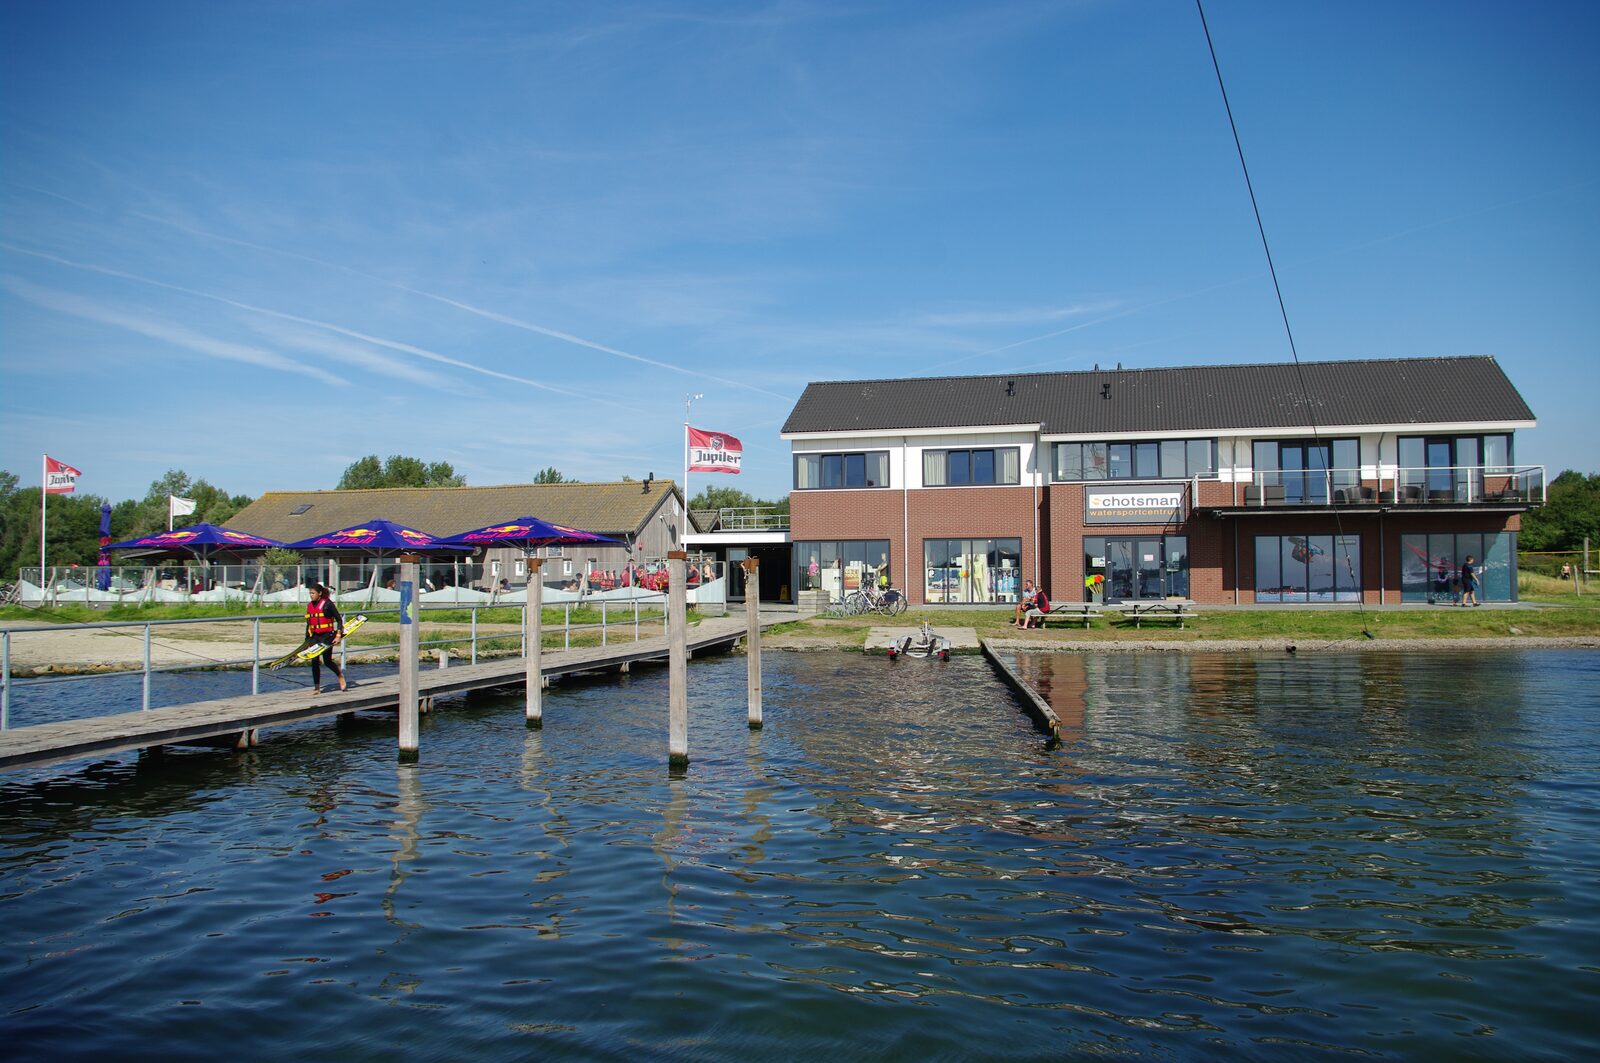 Schotsman watersport along the Veerse meer in Zeeland